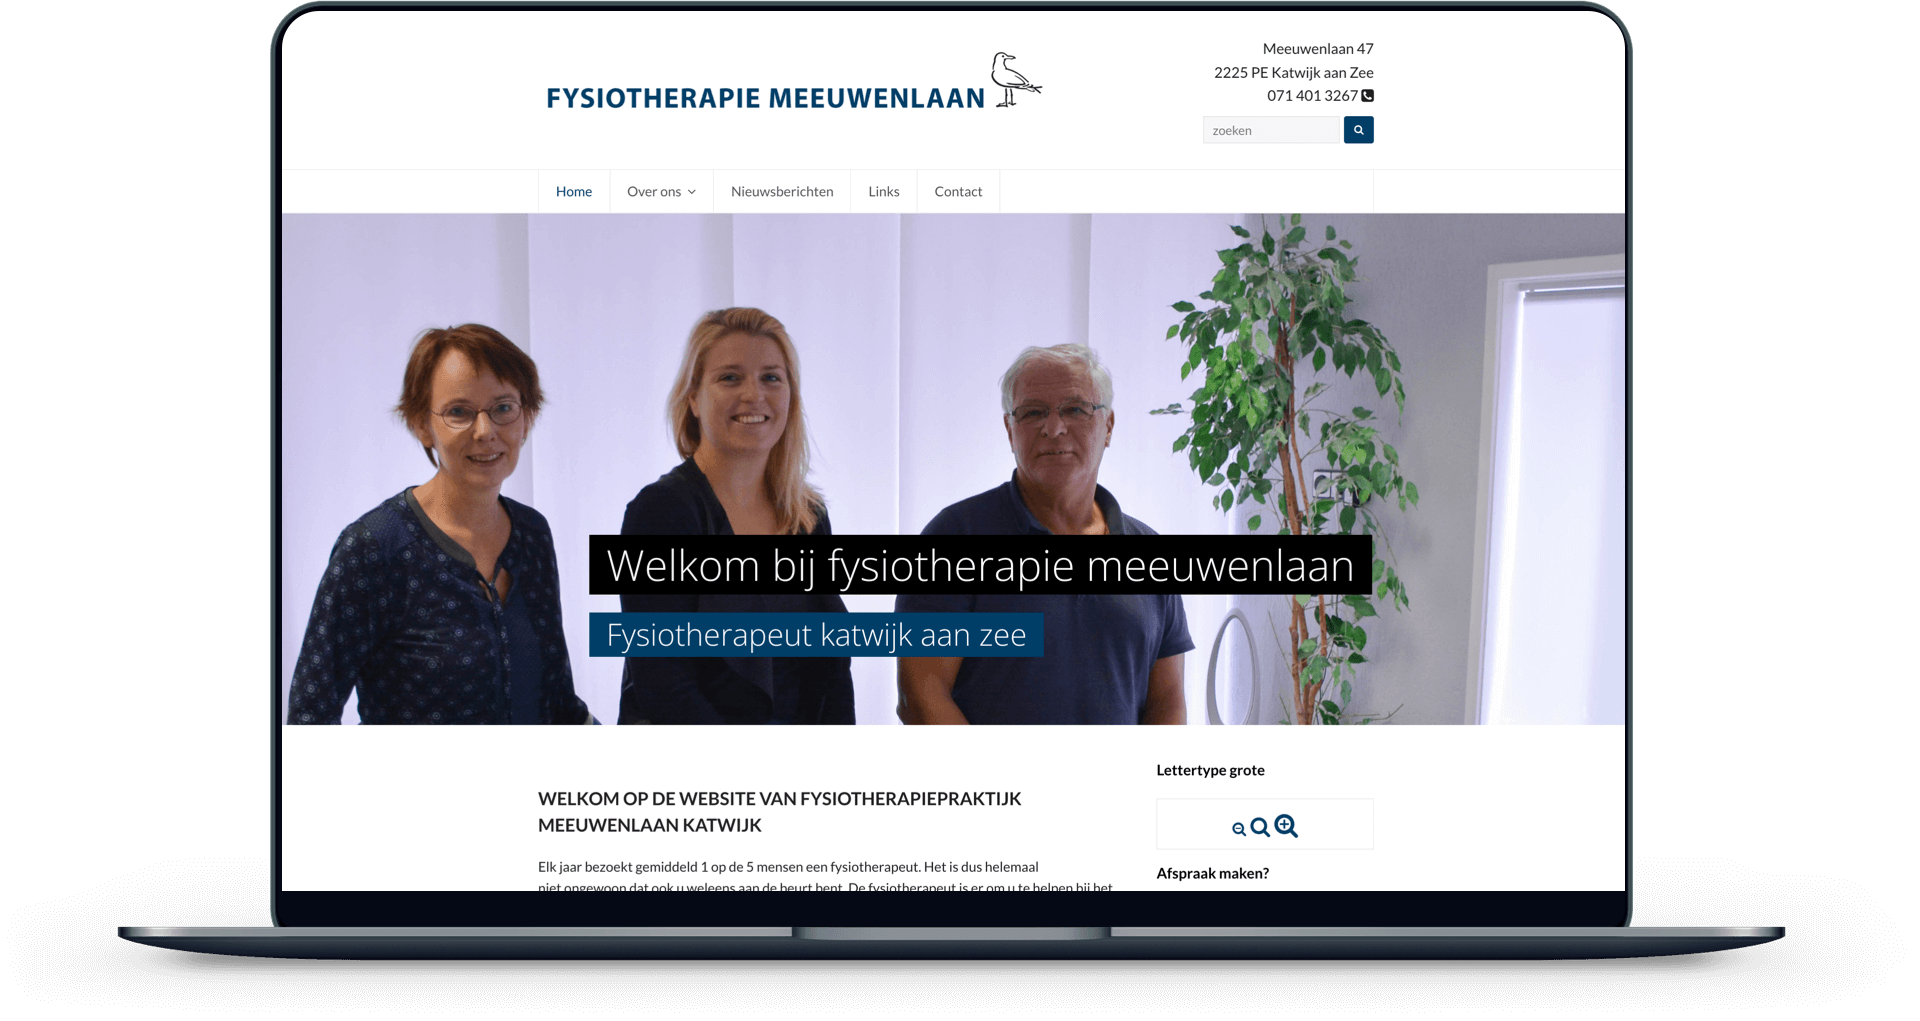 De website van Fysiotherapie Meeuwenlaan